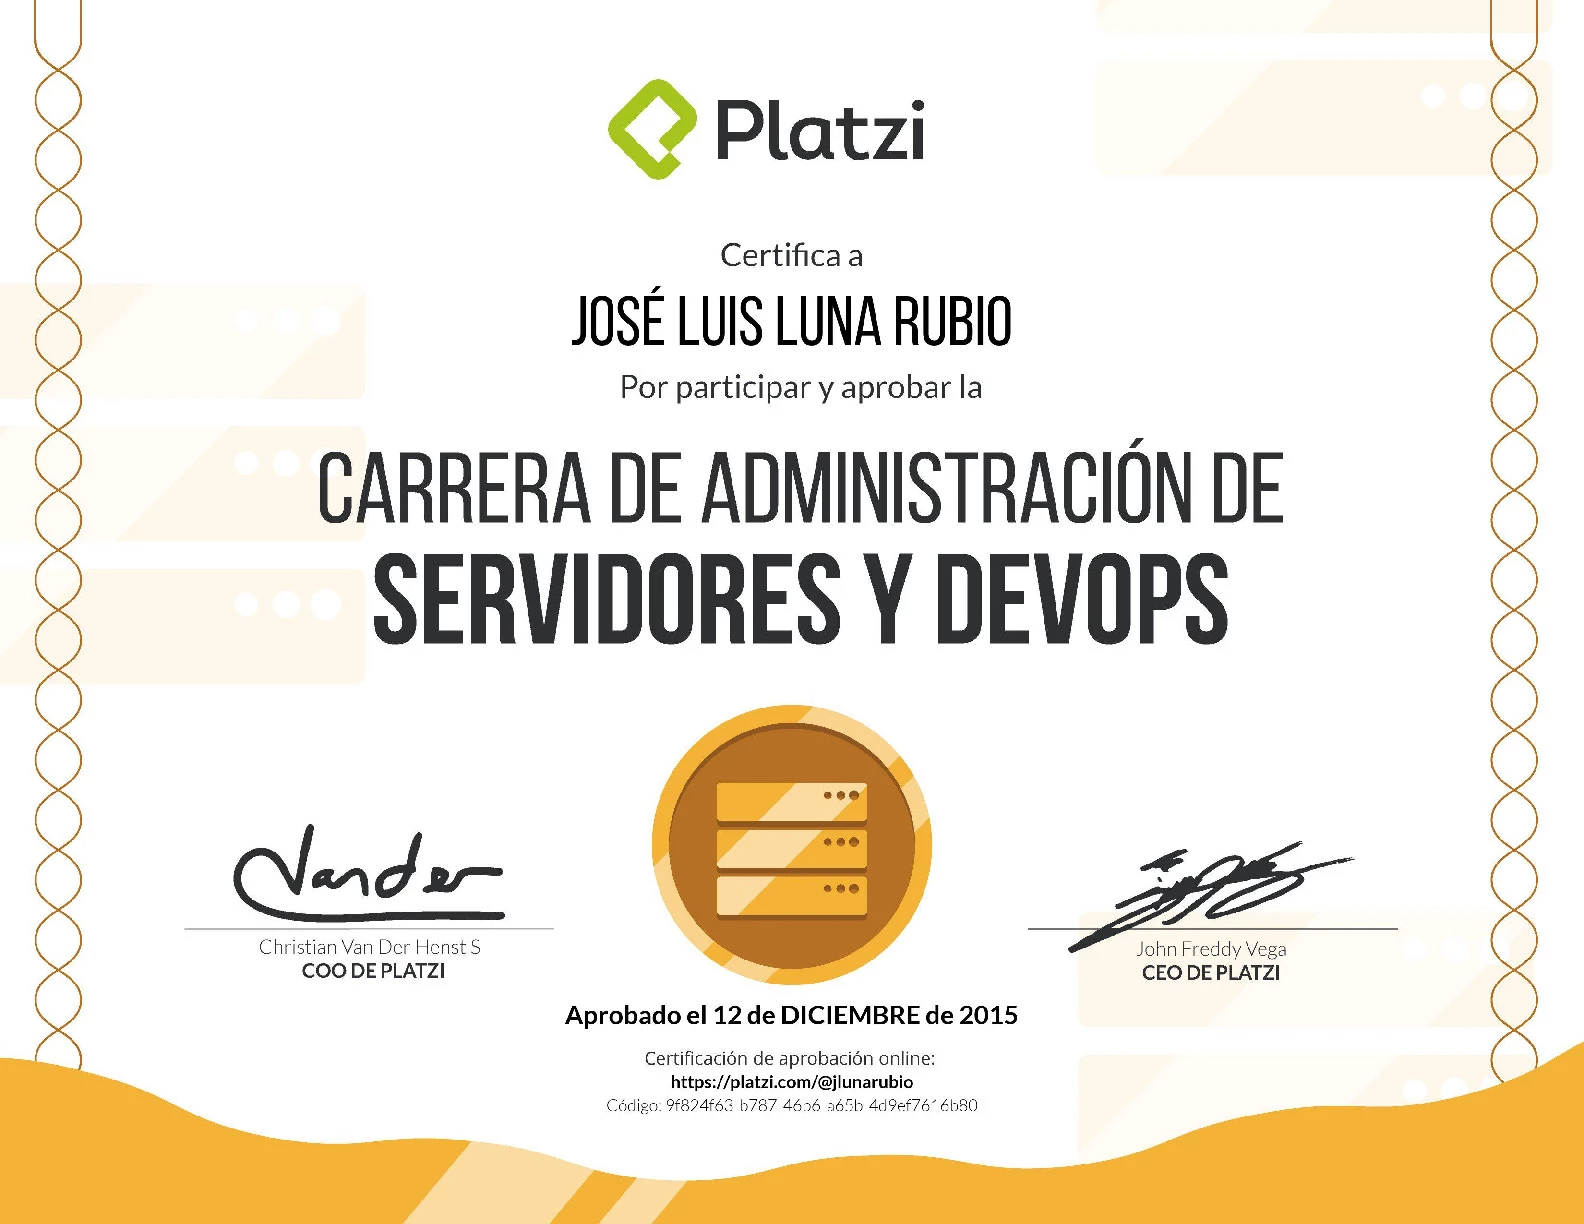 Carrera Platzi Jose Luis Luna Rubio - Administrador de Servidores y DevOps